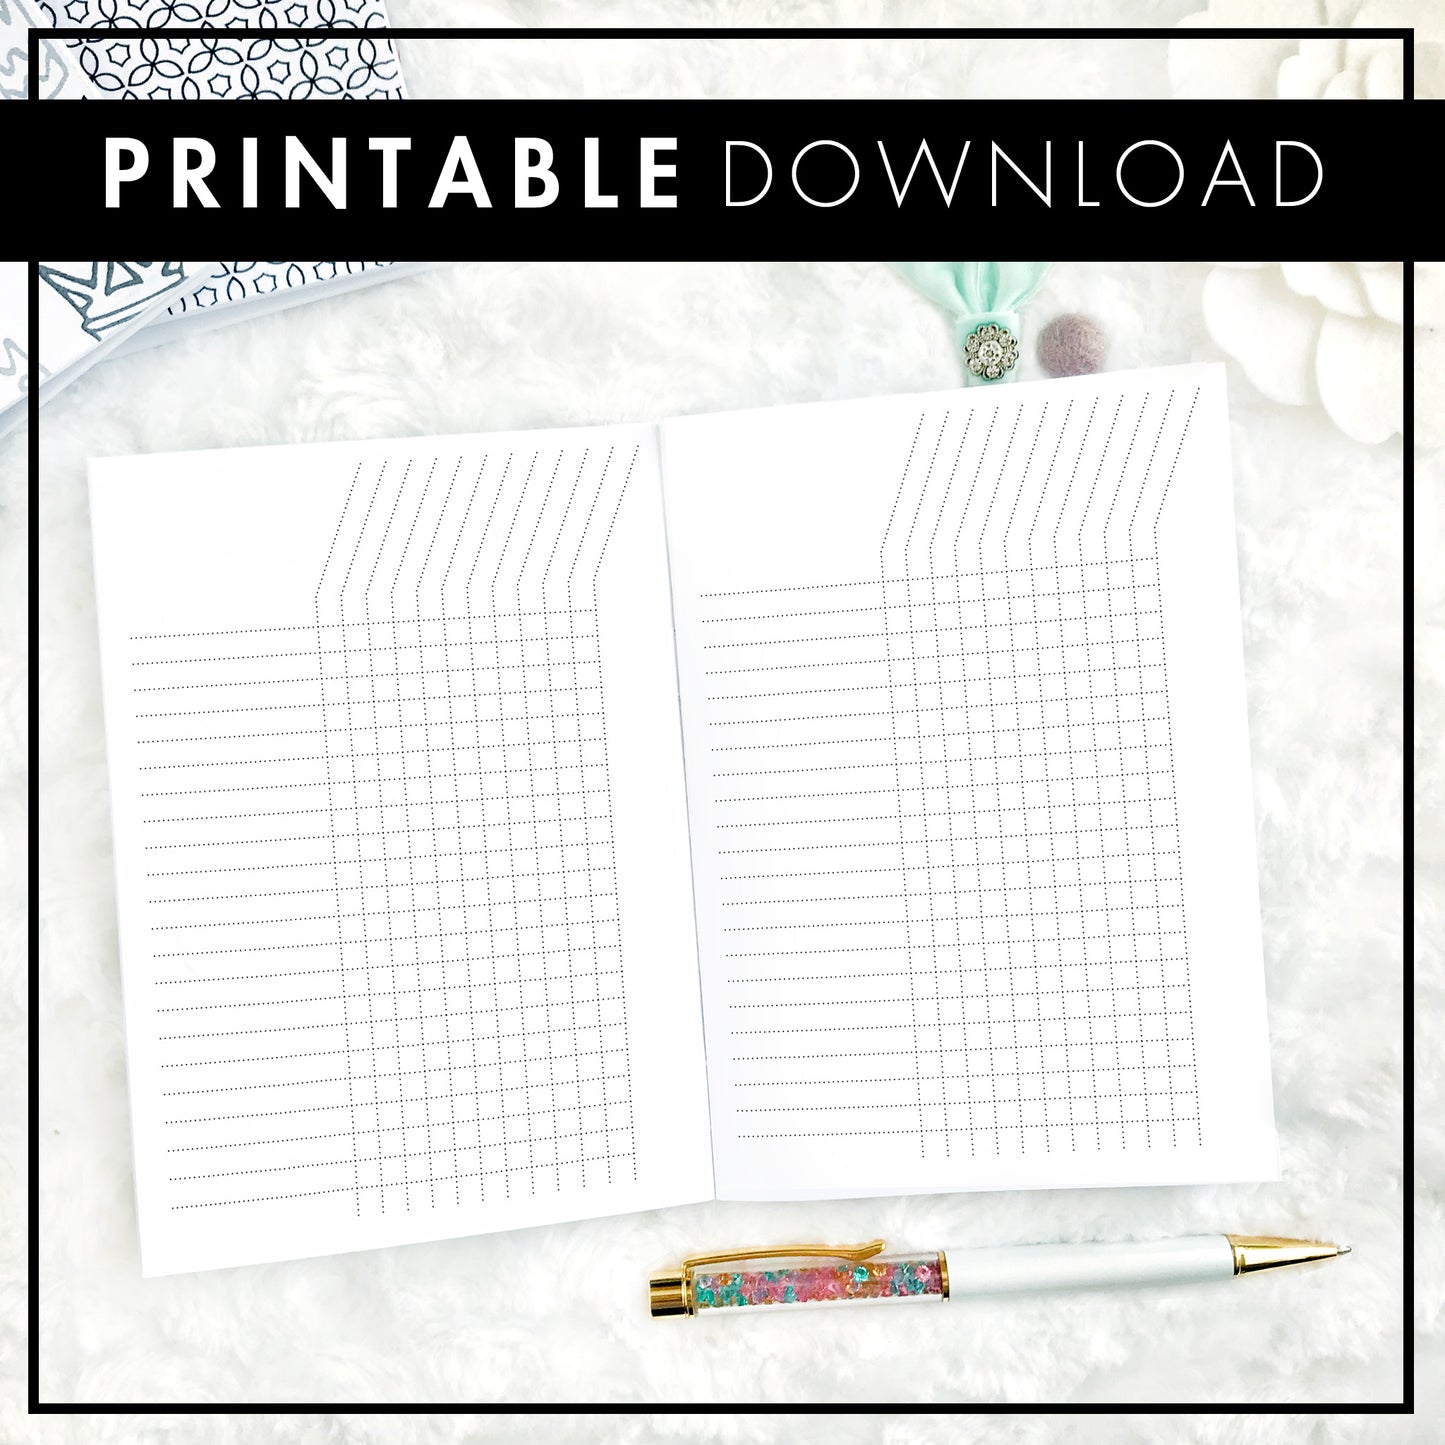 Basic Table | Printable